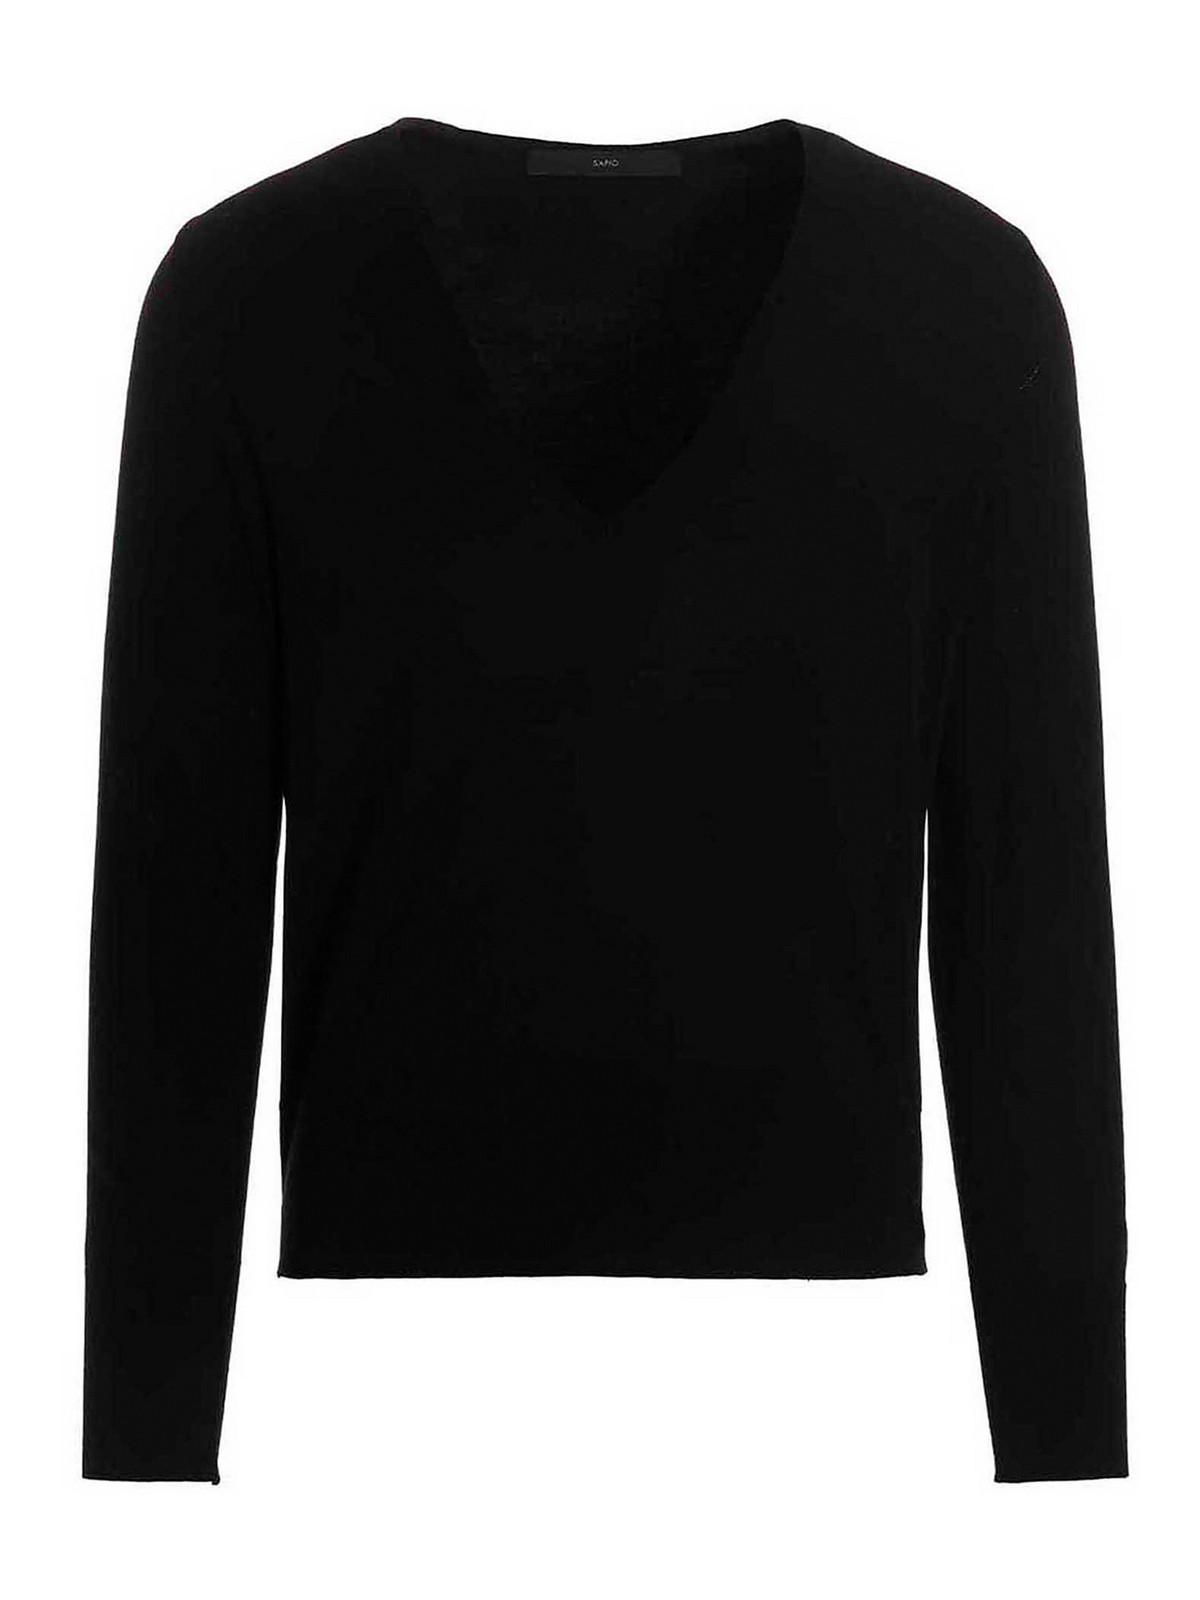 Shop Sapio Wool Sweater In Negro